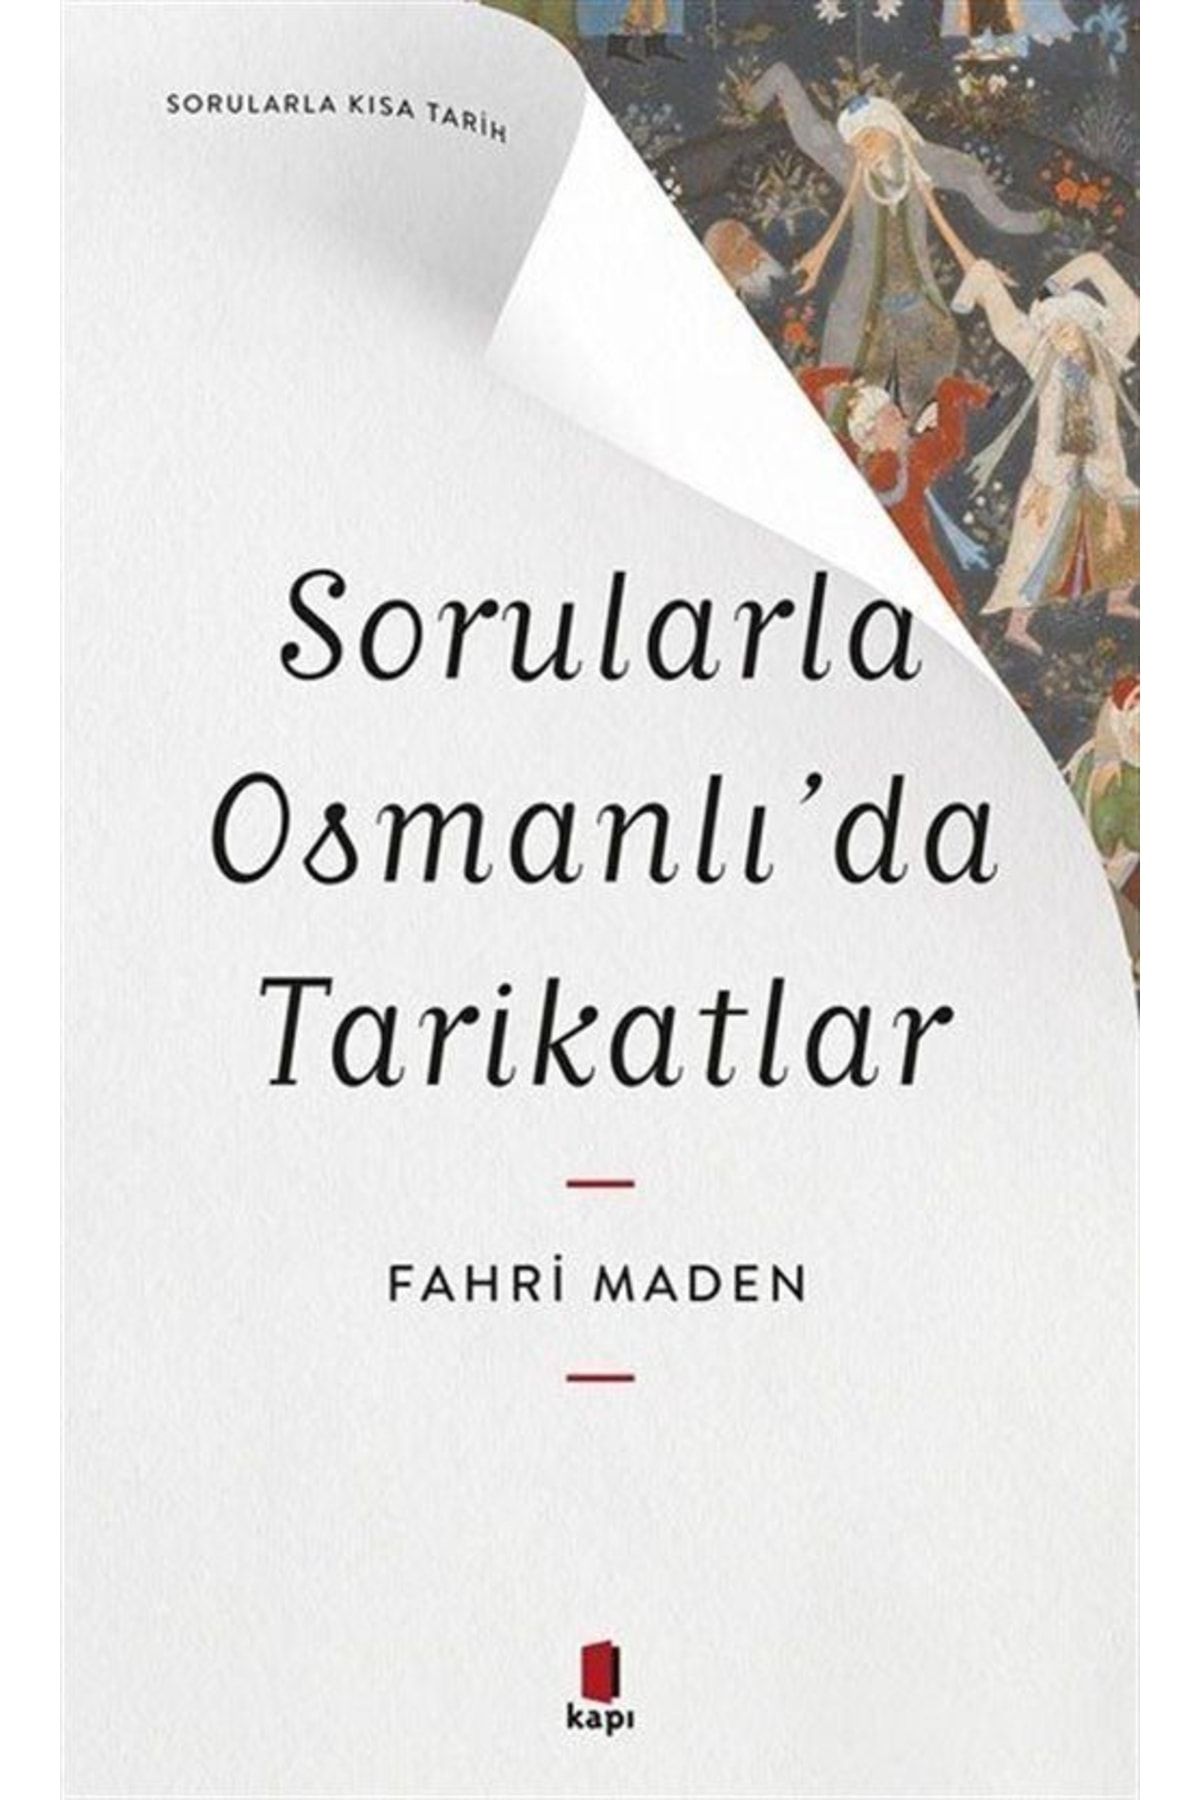 Kapı Yayınları Sorularla Osmanlı’da Tarikatlar - Sorularla Kısa Tarih kitabı - Fahri Maden - Kapı Yayınları